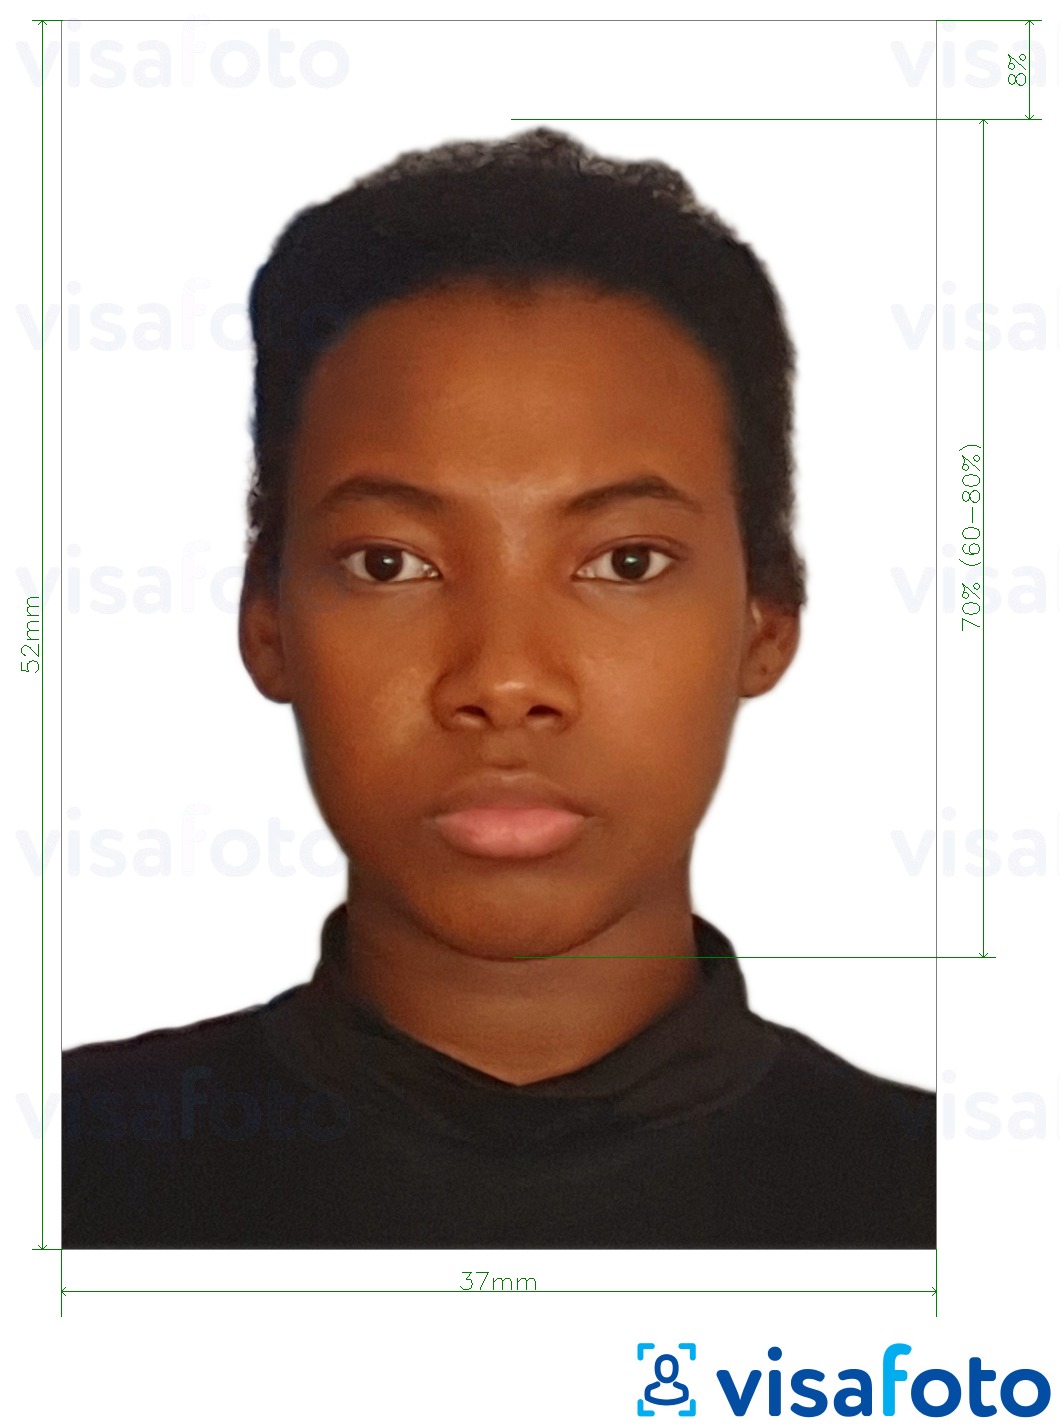 Ejemplo de foto para Visa de Namibia 37x52mm (3.7x5.2 cm) con la especificación del tamaño exacto